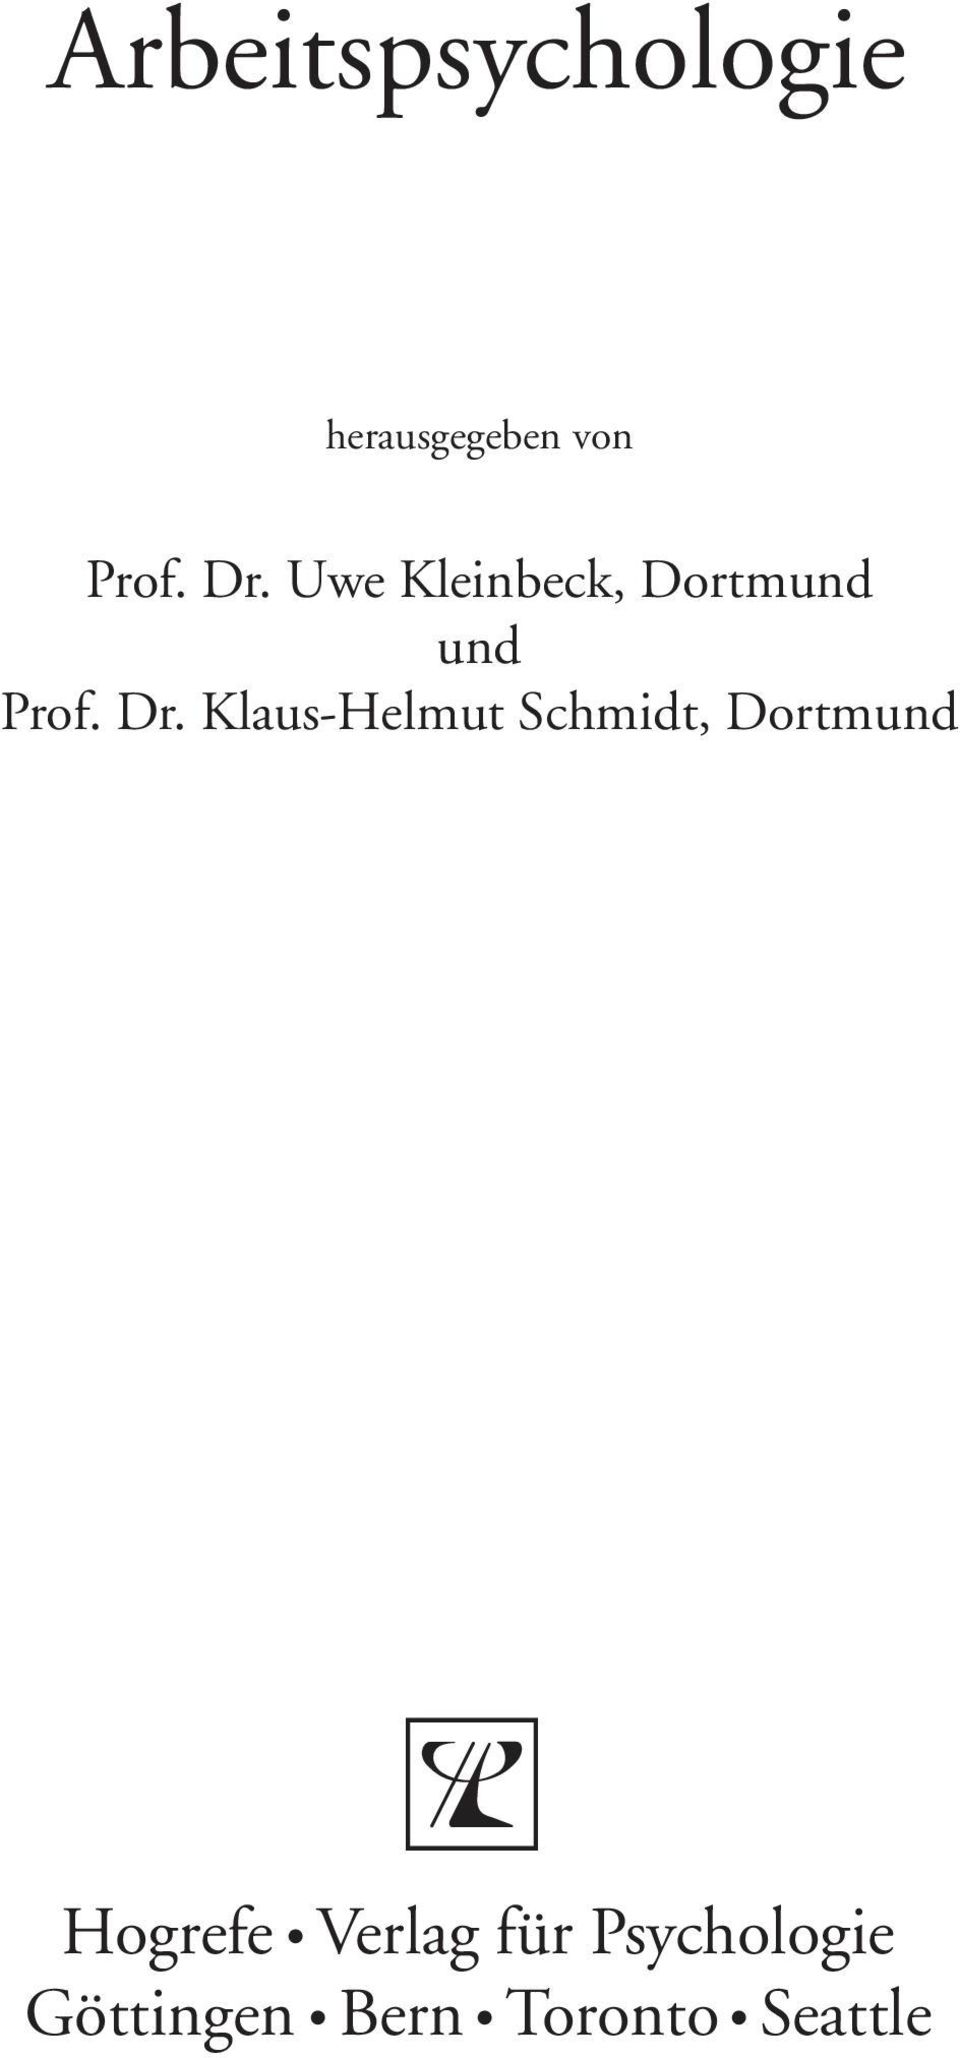 Klaus-Helmut Schmidt, Dortmund Hogrefe